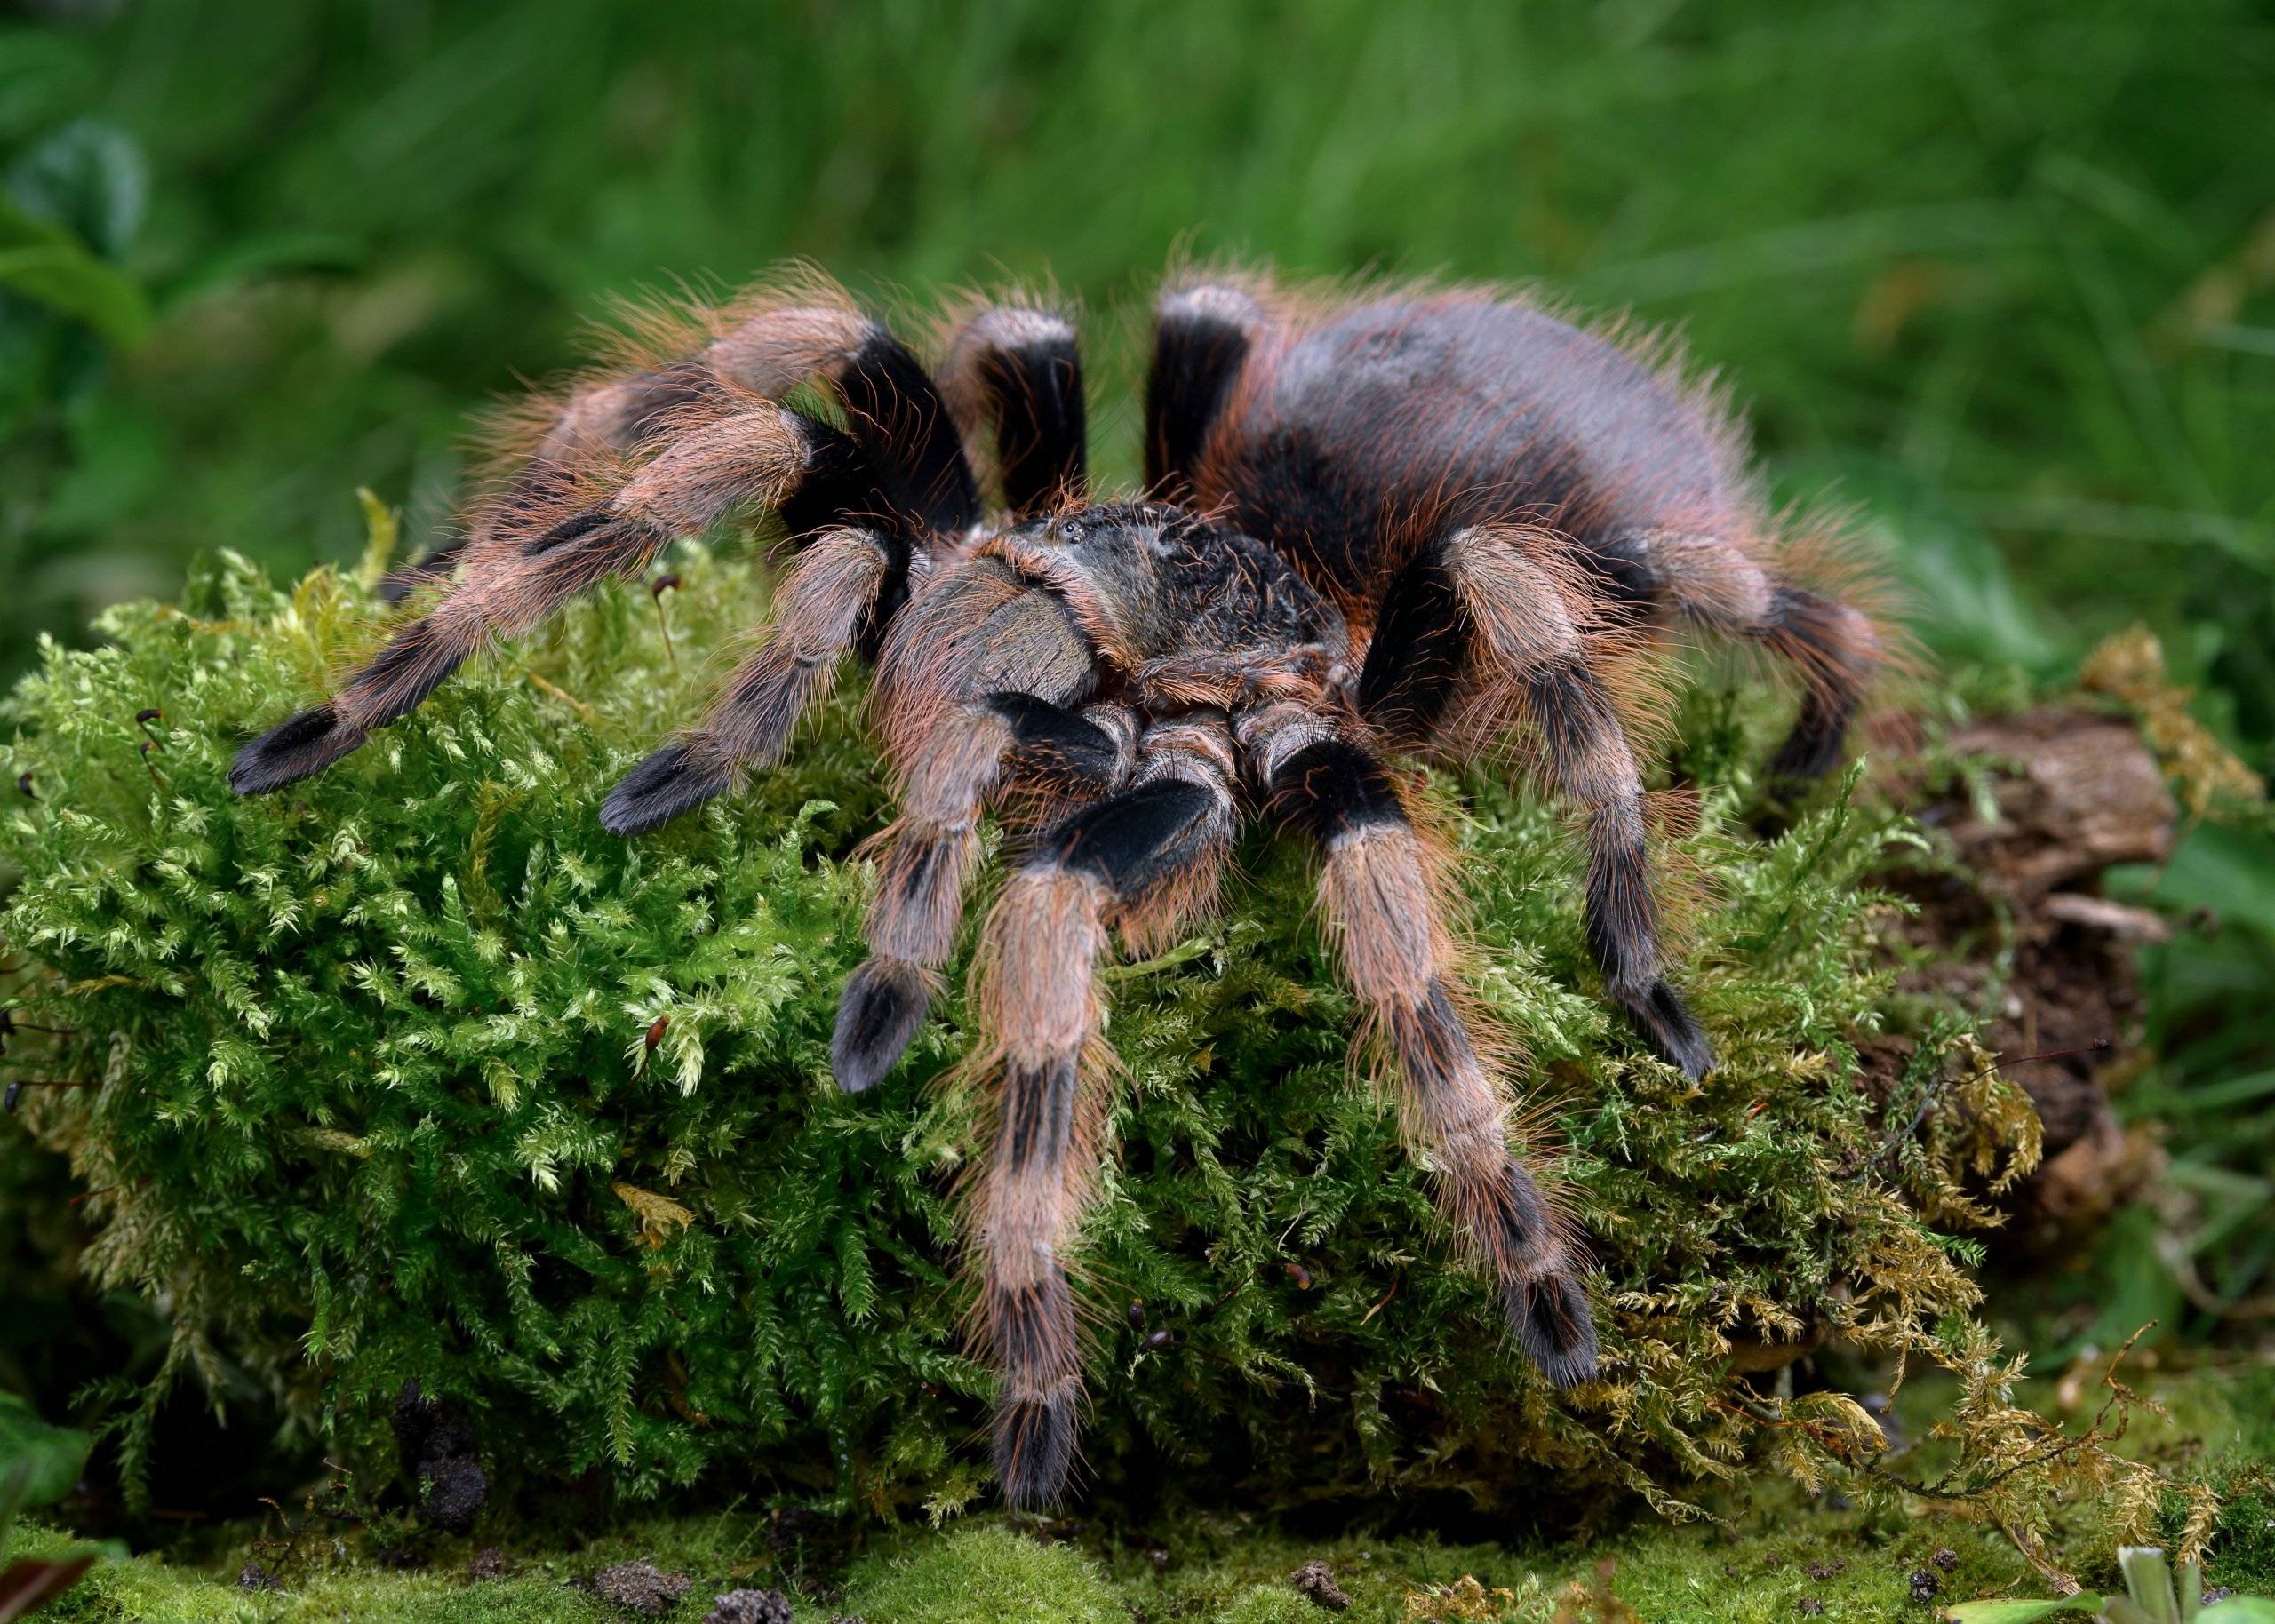 Южнорусский тарантул: фото и описание, опасен ли для человека, как избавиться на участке